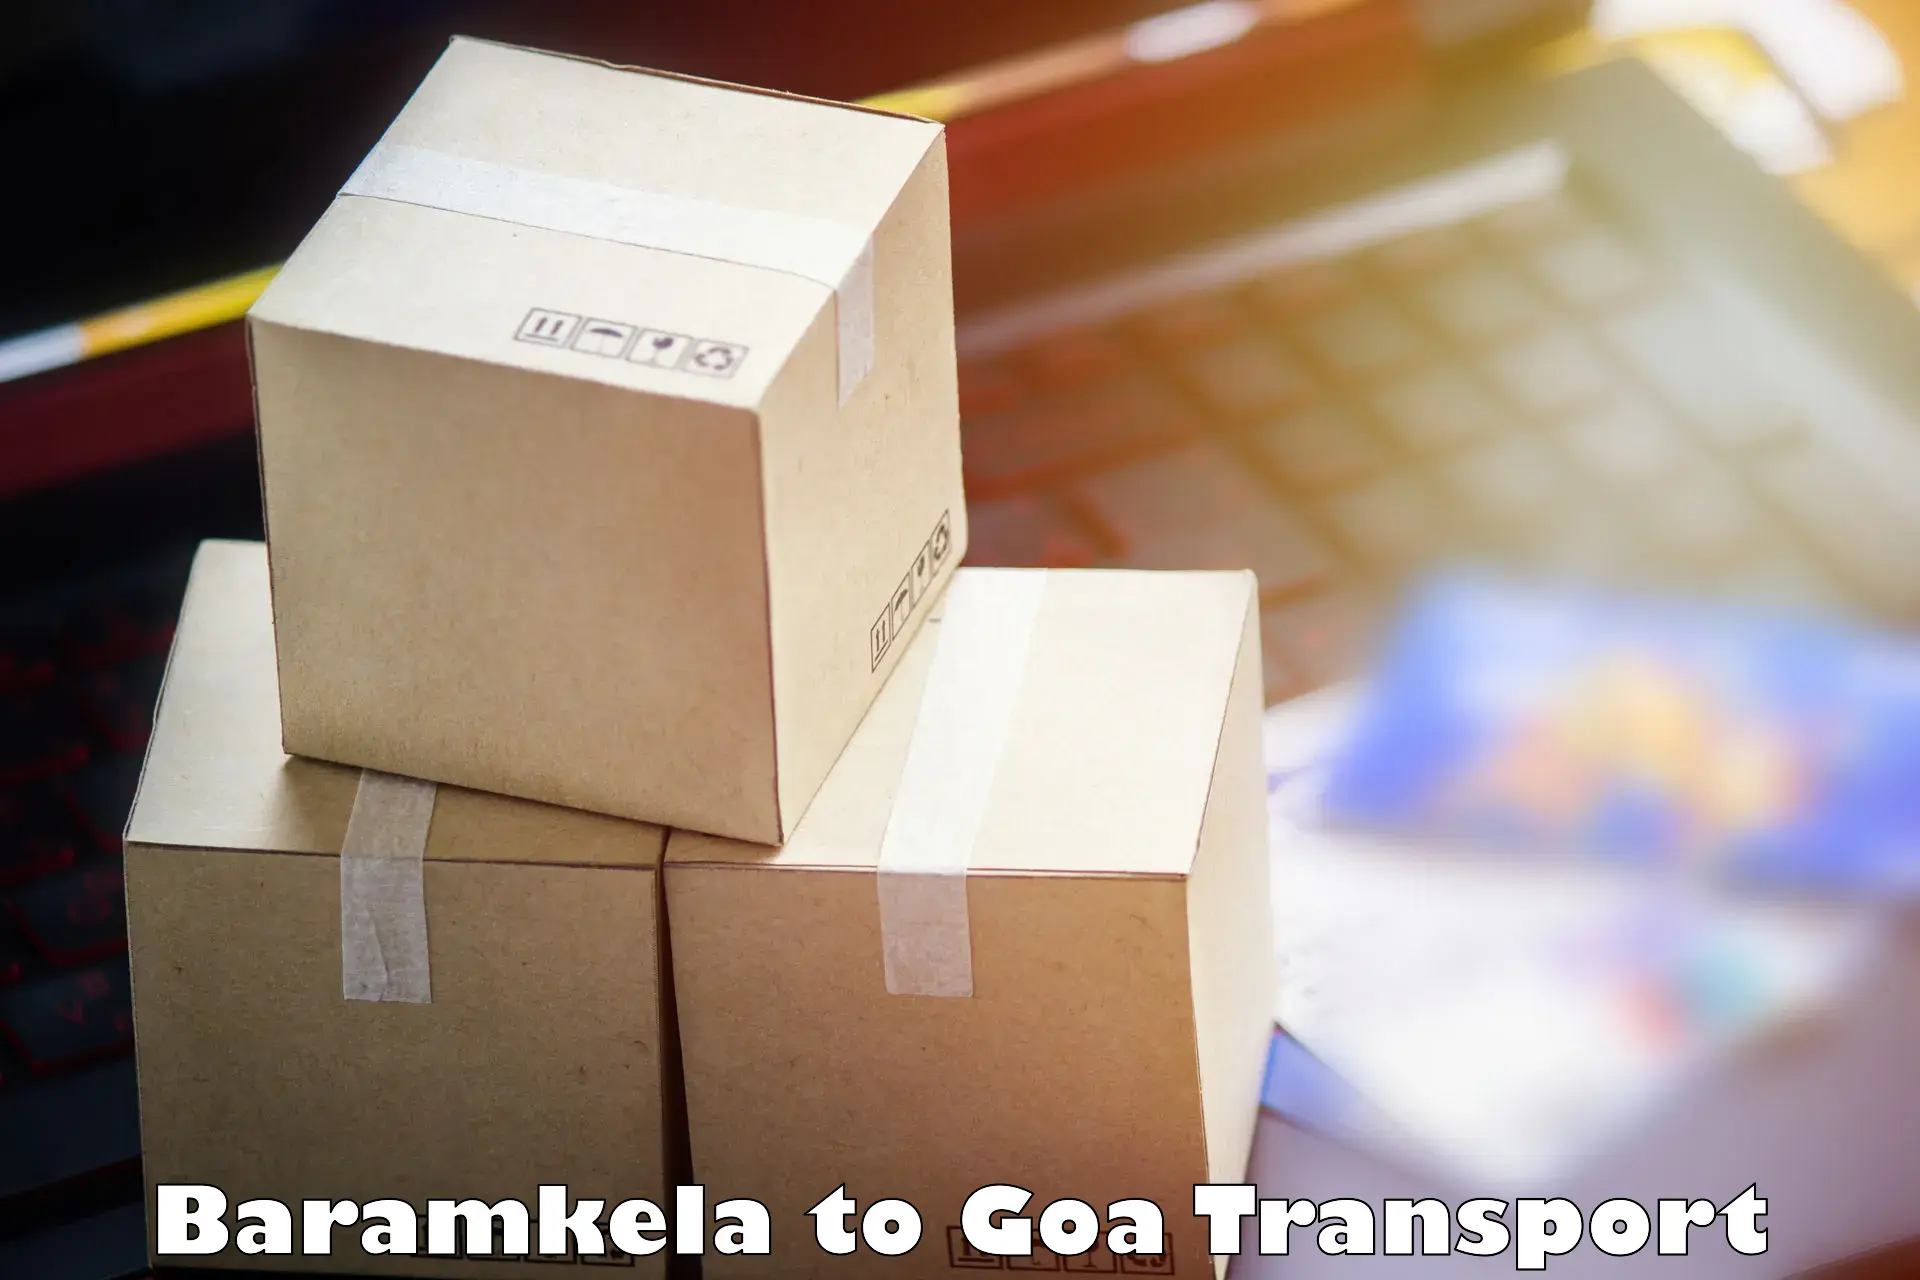 Shipping partner Baramkela to Ponda